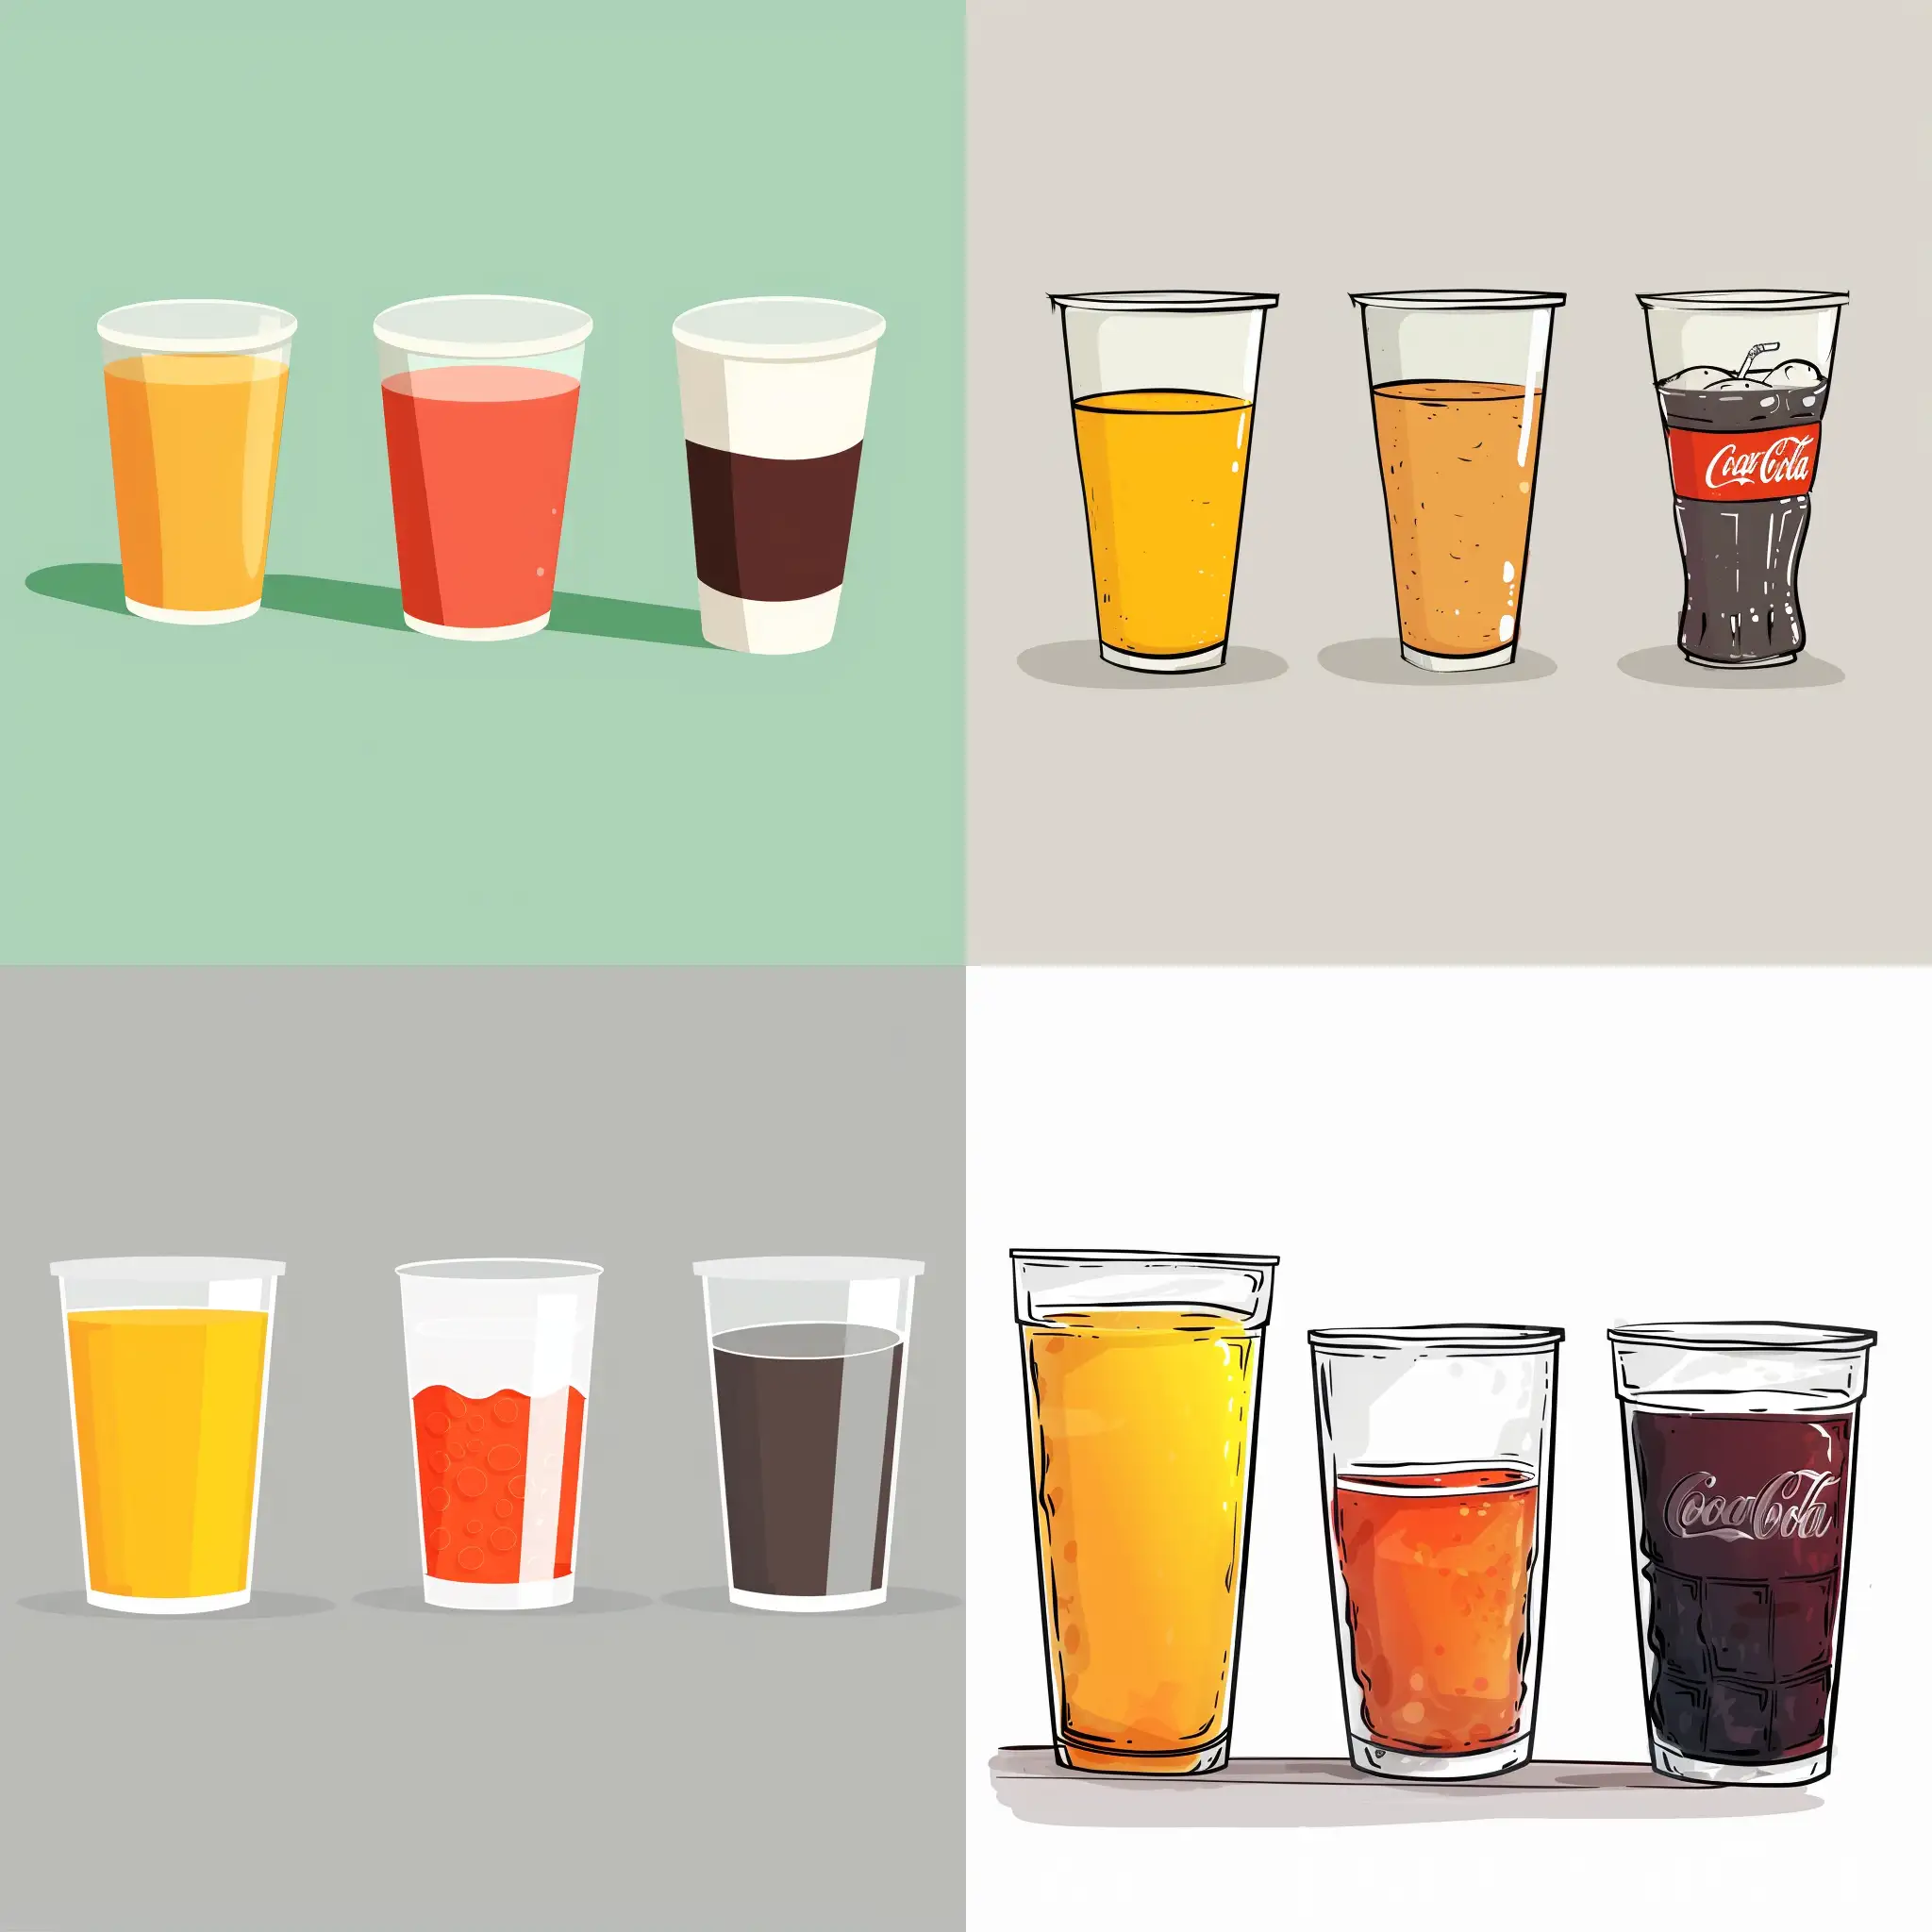 空白的背景有三个隔着一定距离的动画风格的杯子，第一个杯子装着橙汁，第二个杯子装着可乐，第三个杯子什么都没装